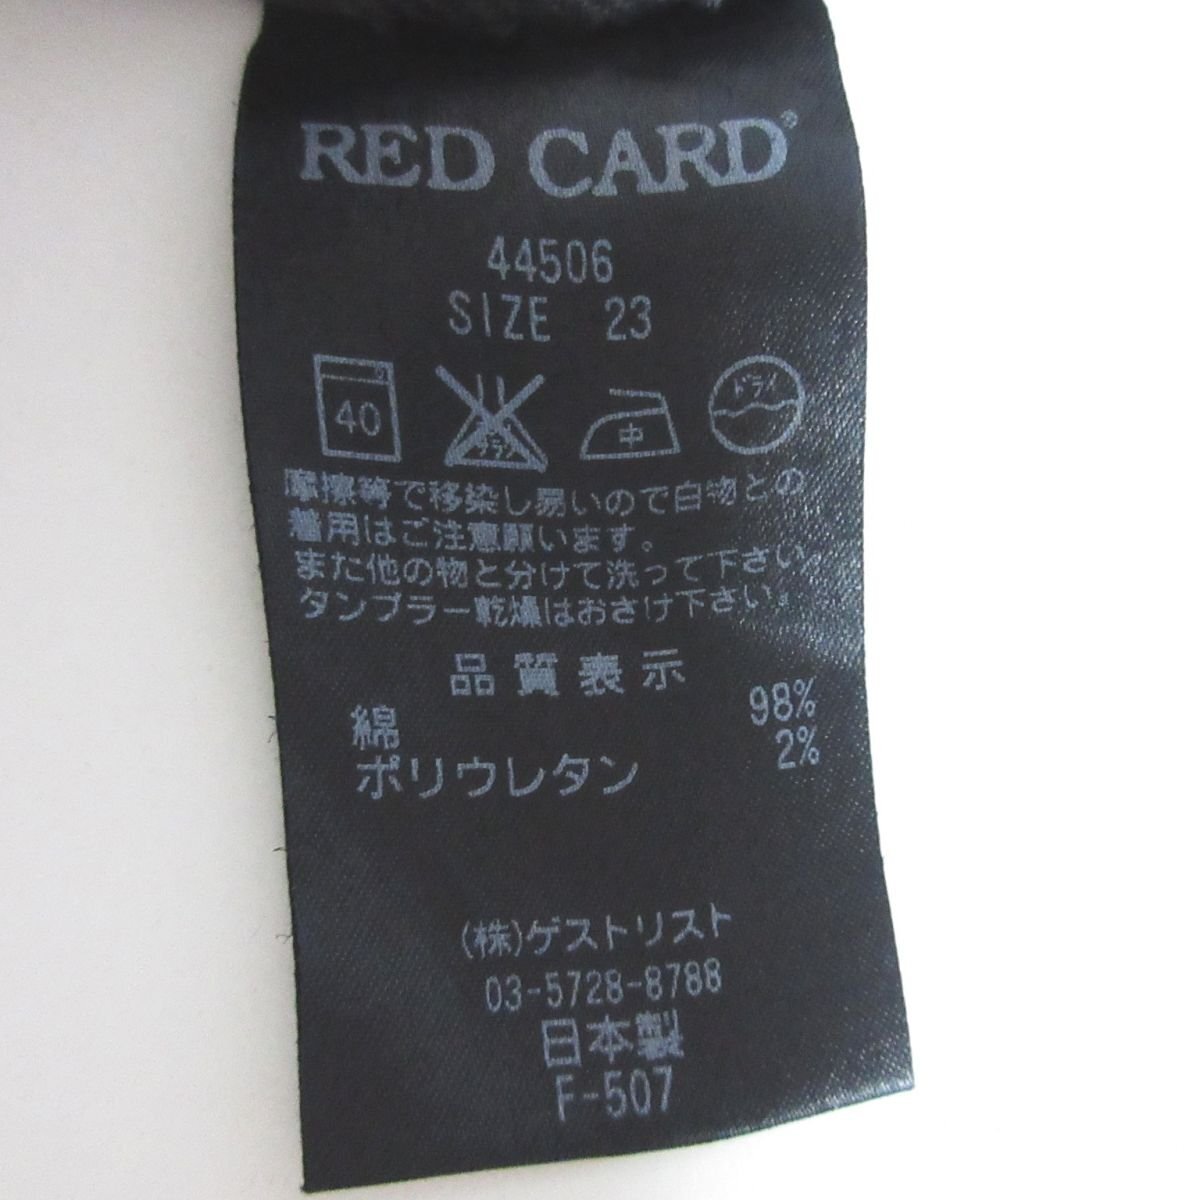 美品 RED CARD レッドカード Anniversary 25th カットオフ ストレッチ デニムパンツ ジーンズ 44506 23 ブラック ◆_画像6